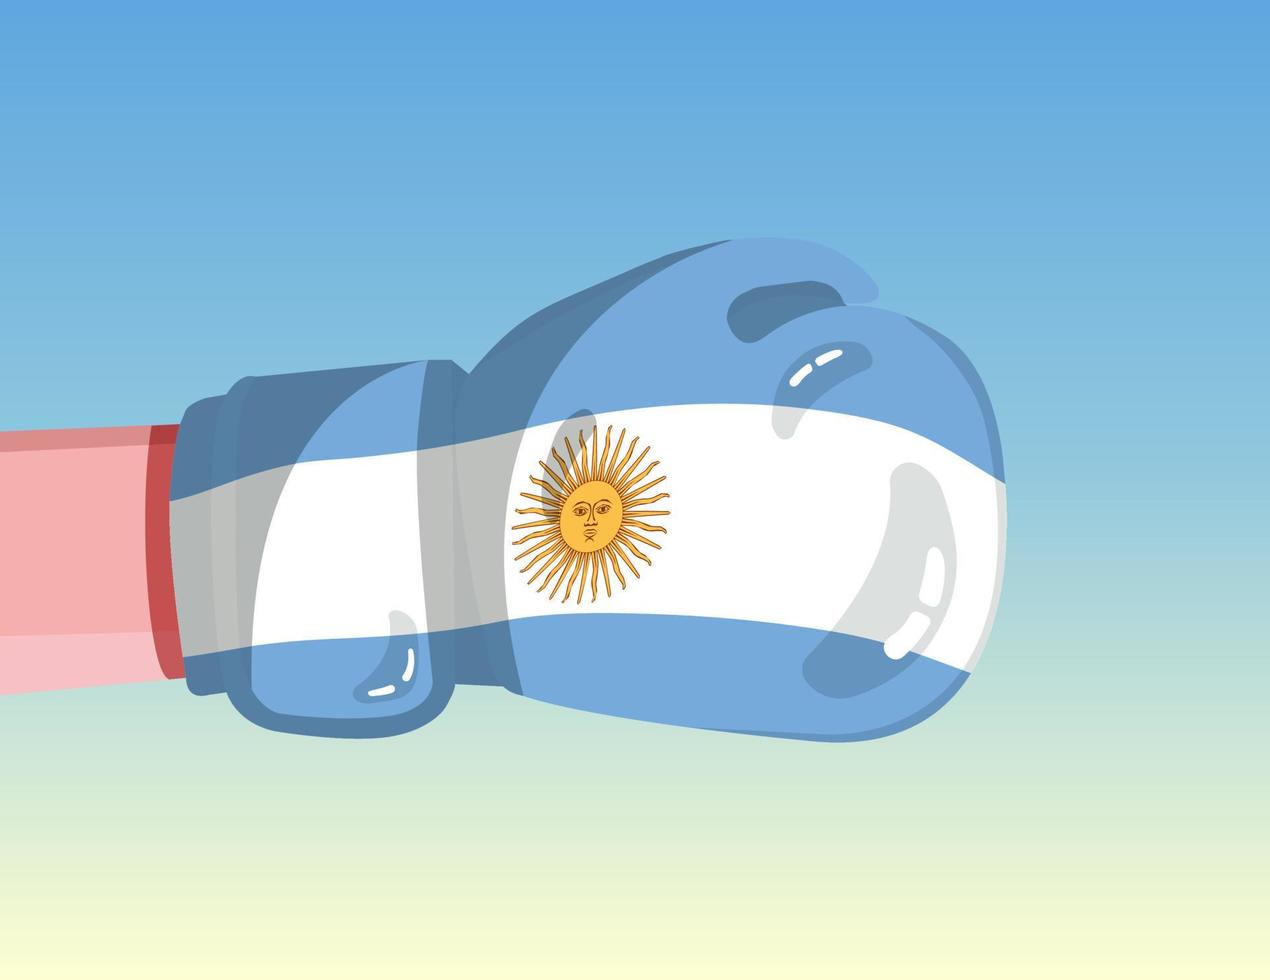 bandera argentina en guante de boxeo. confrontación entre países con poder competitivo. actitud ofensiva separación del poder. diseño listo para la plantilla. vector